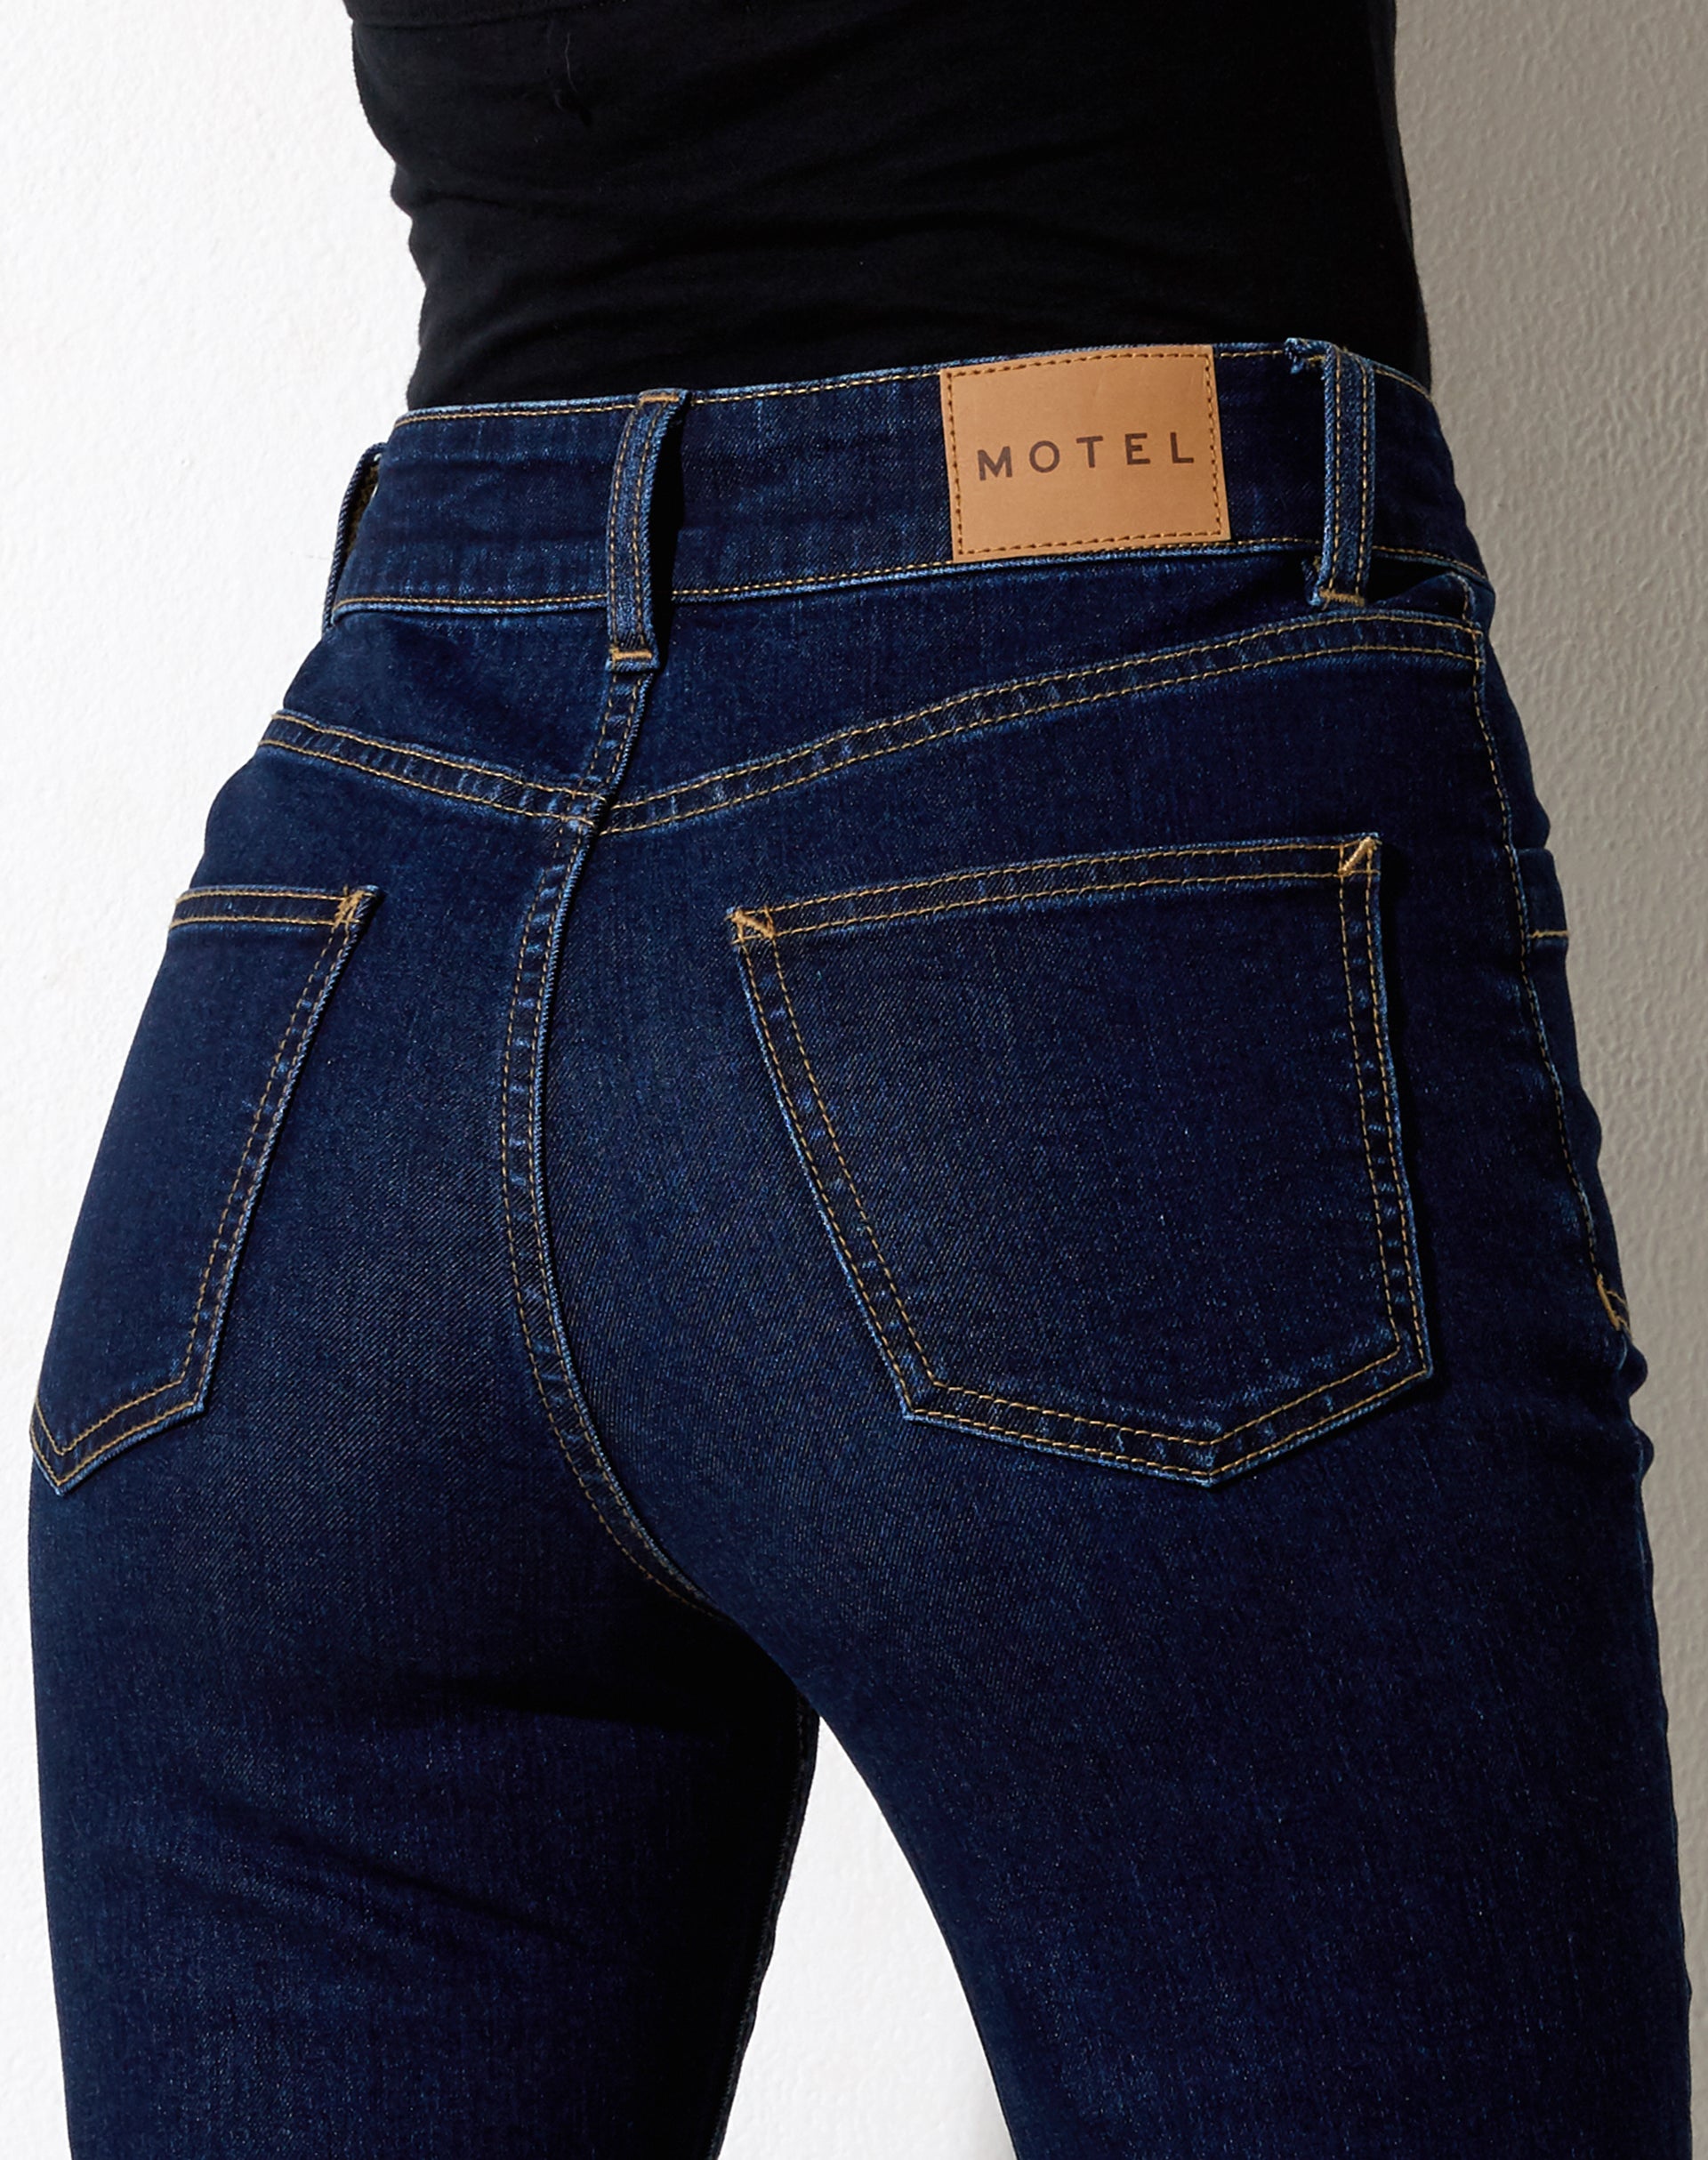 Image of Seam Split Jeans in Indigo Blue